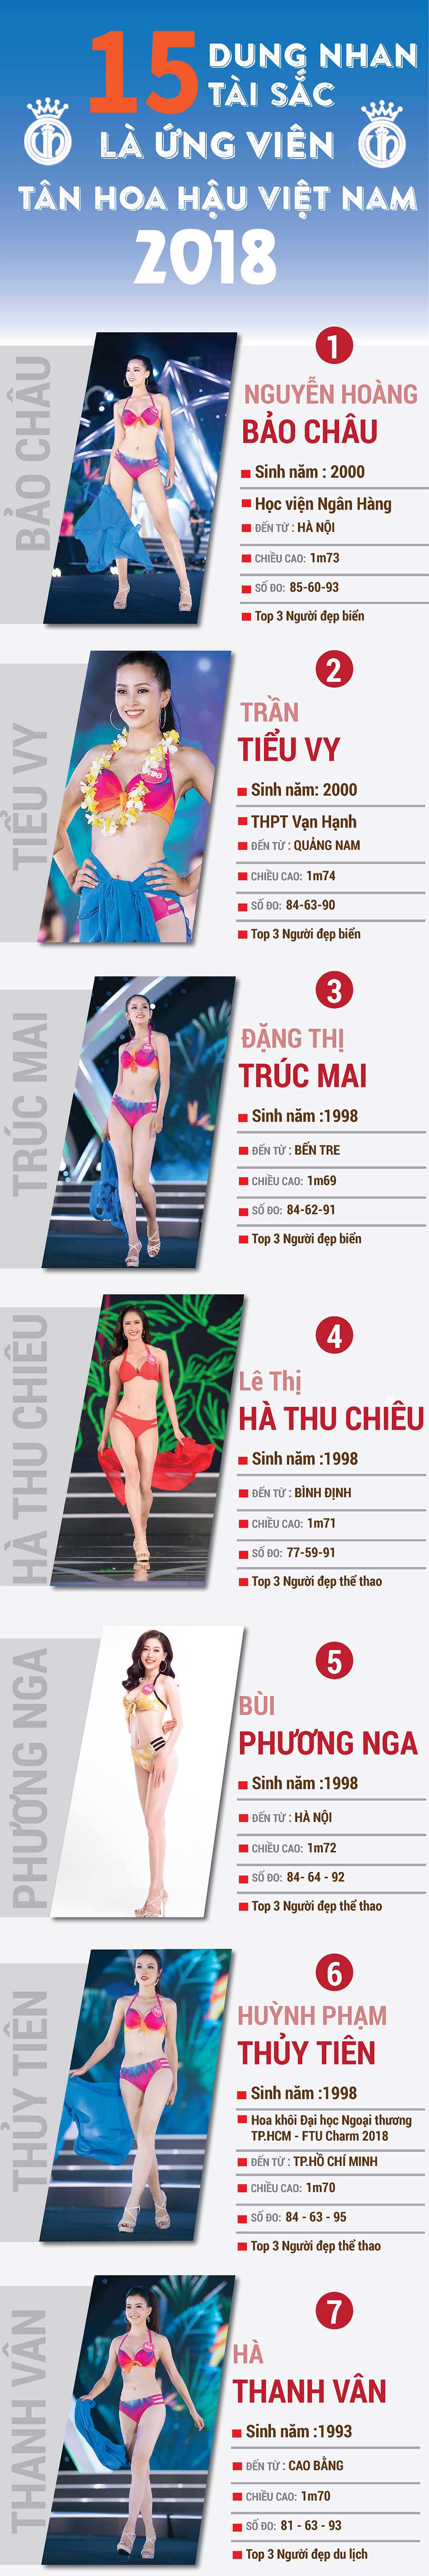 15 cô gái tiềm năng nhất Hoa hậu Việt Nam 2018 - 1